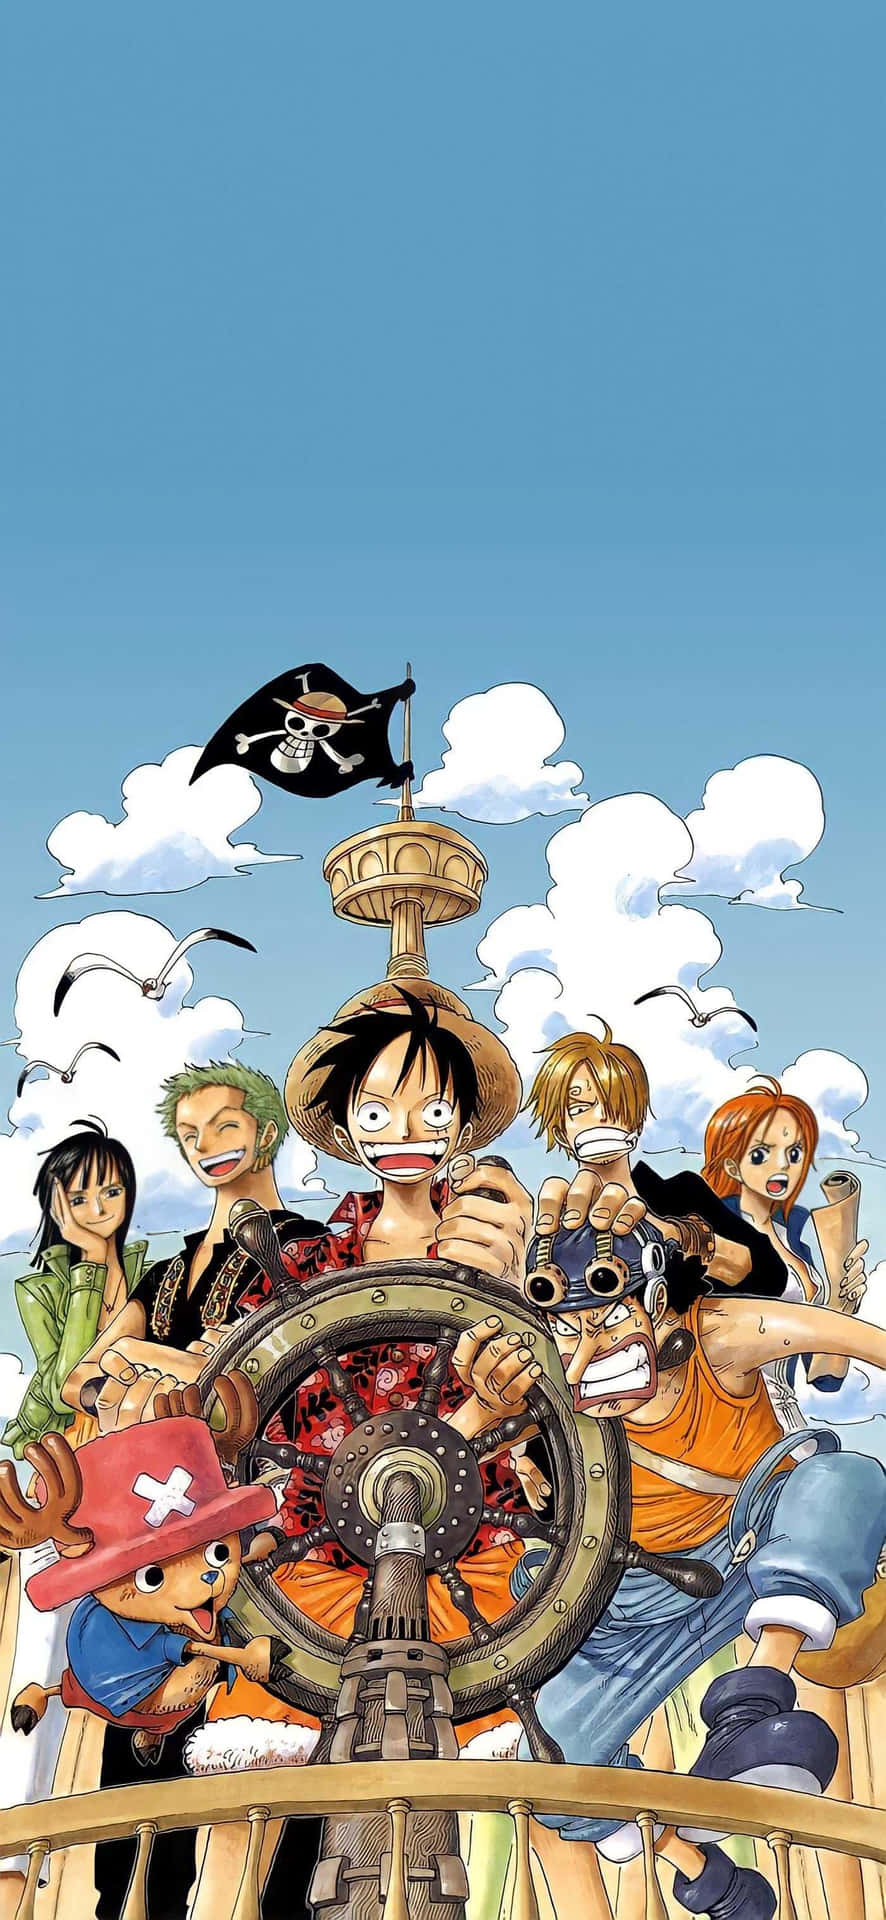 Personajesde One Piece En Una Imagen De Un Barco Pirata.